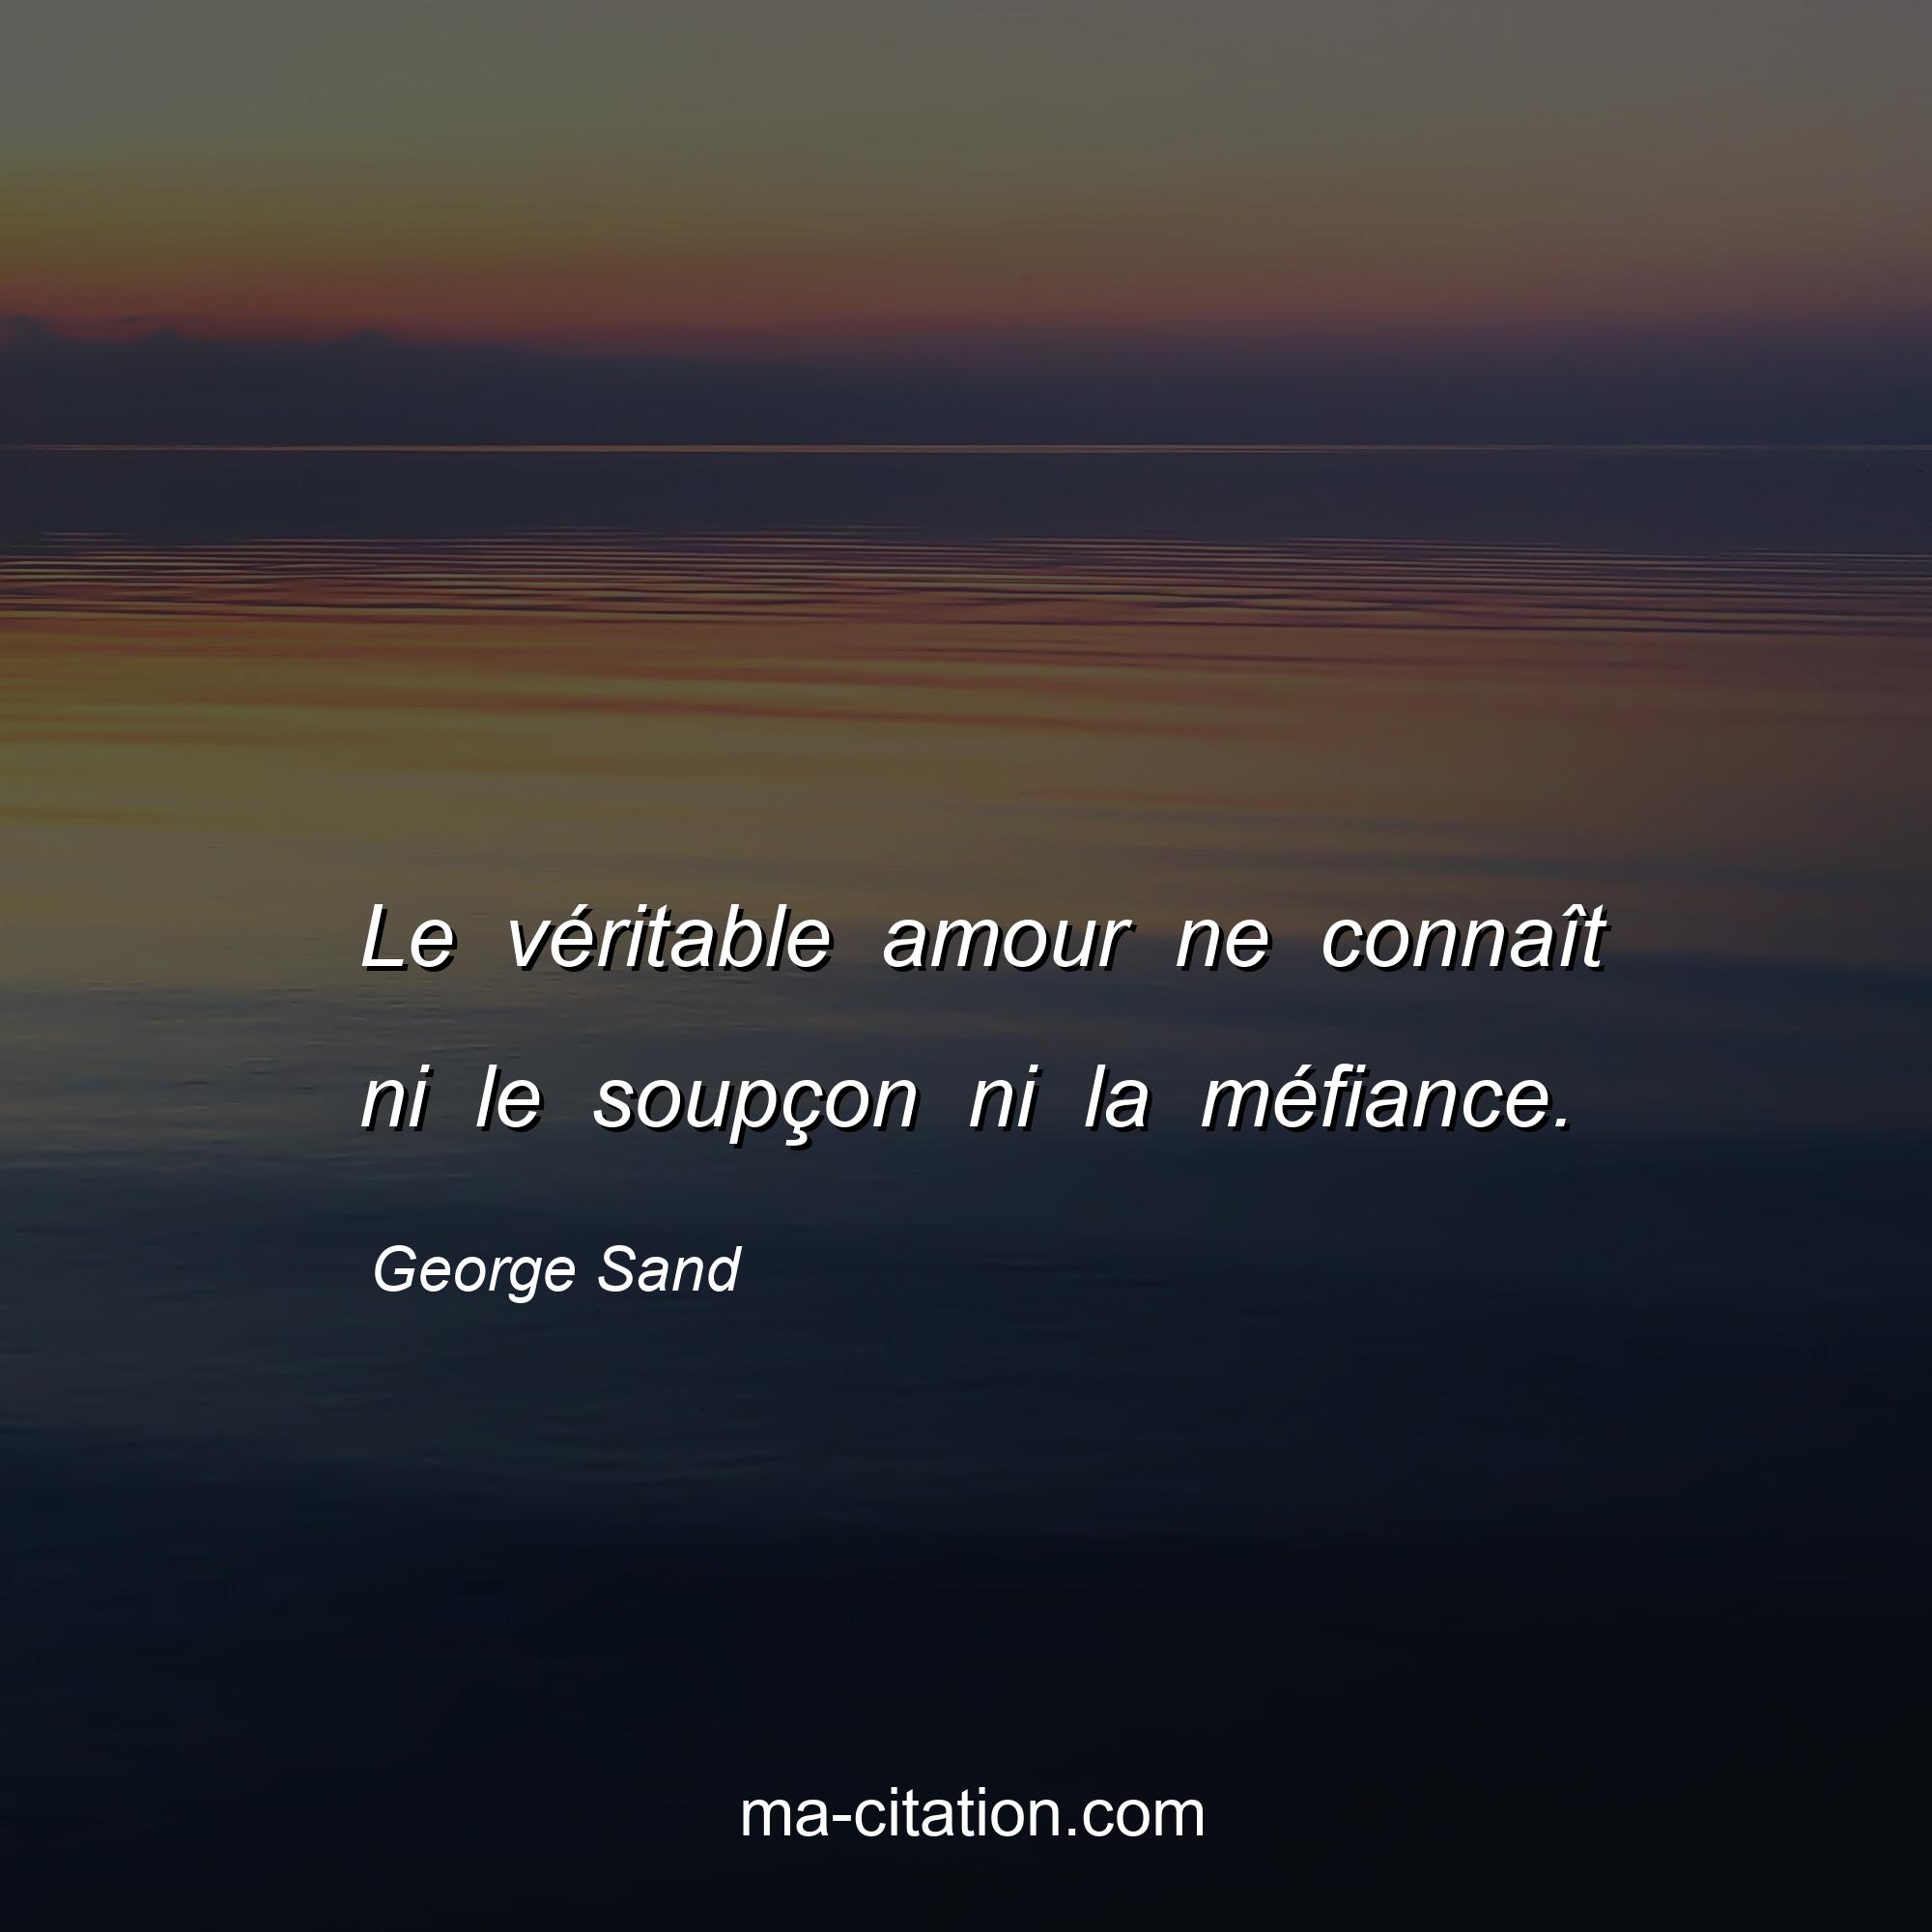 George Sand : Le véritable amour ne connaît ni le soupçon ni la méfiance.